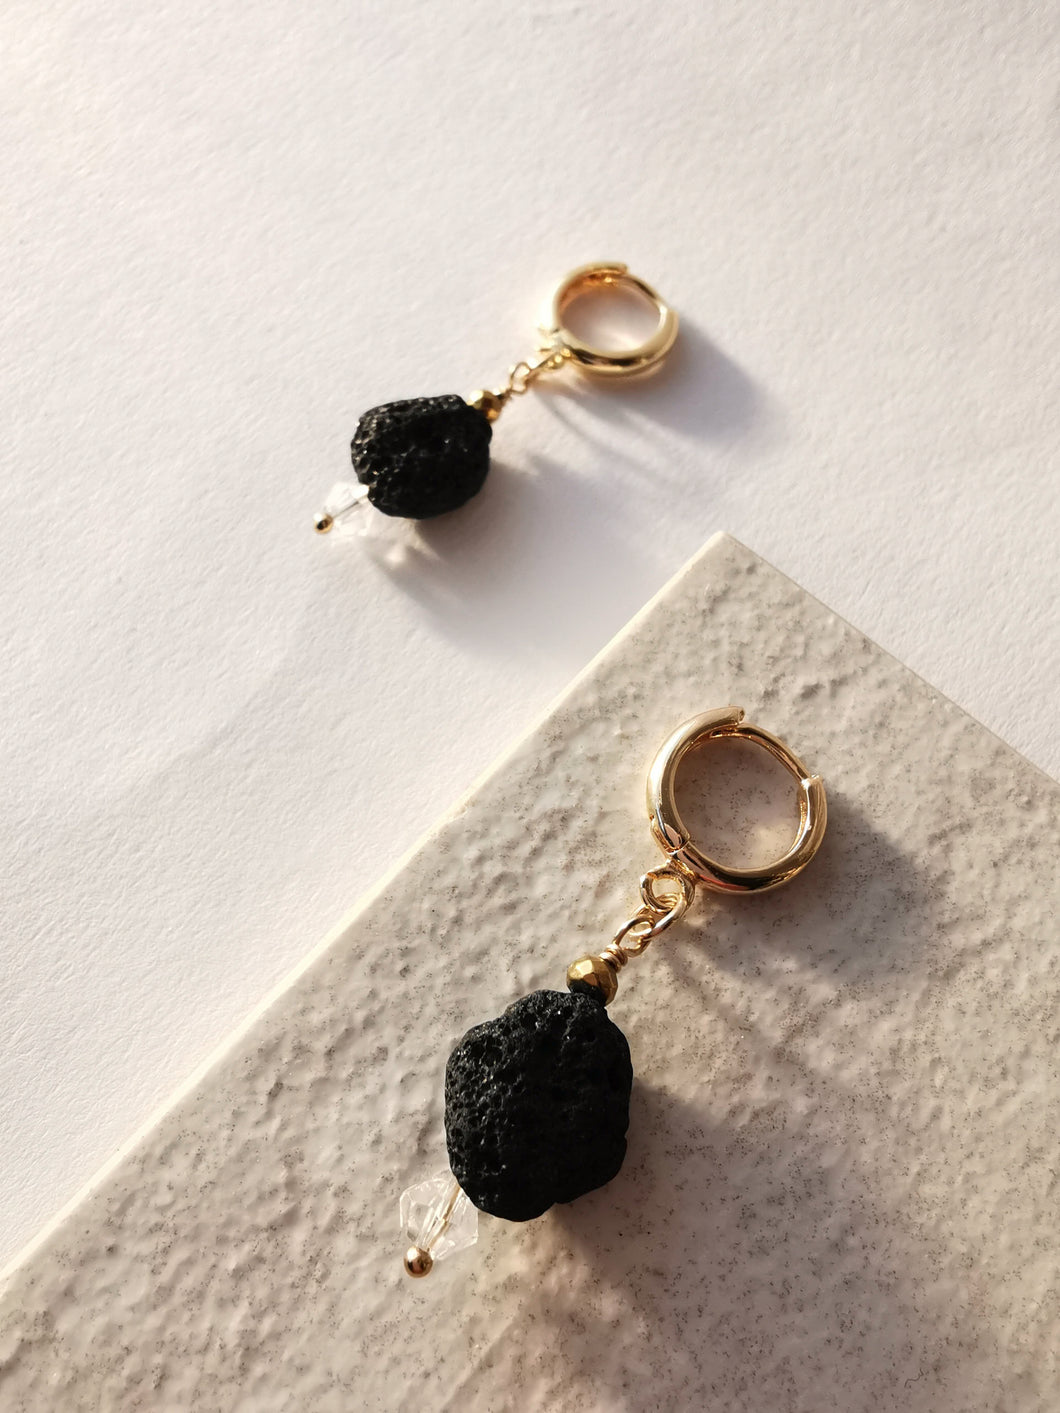 Lava stone earrings